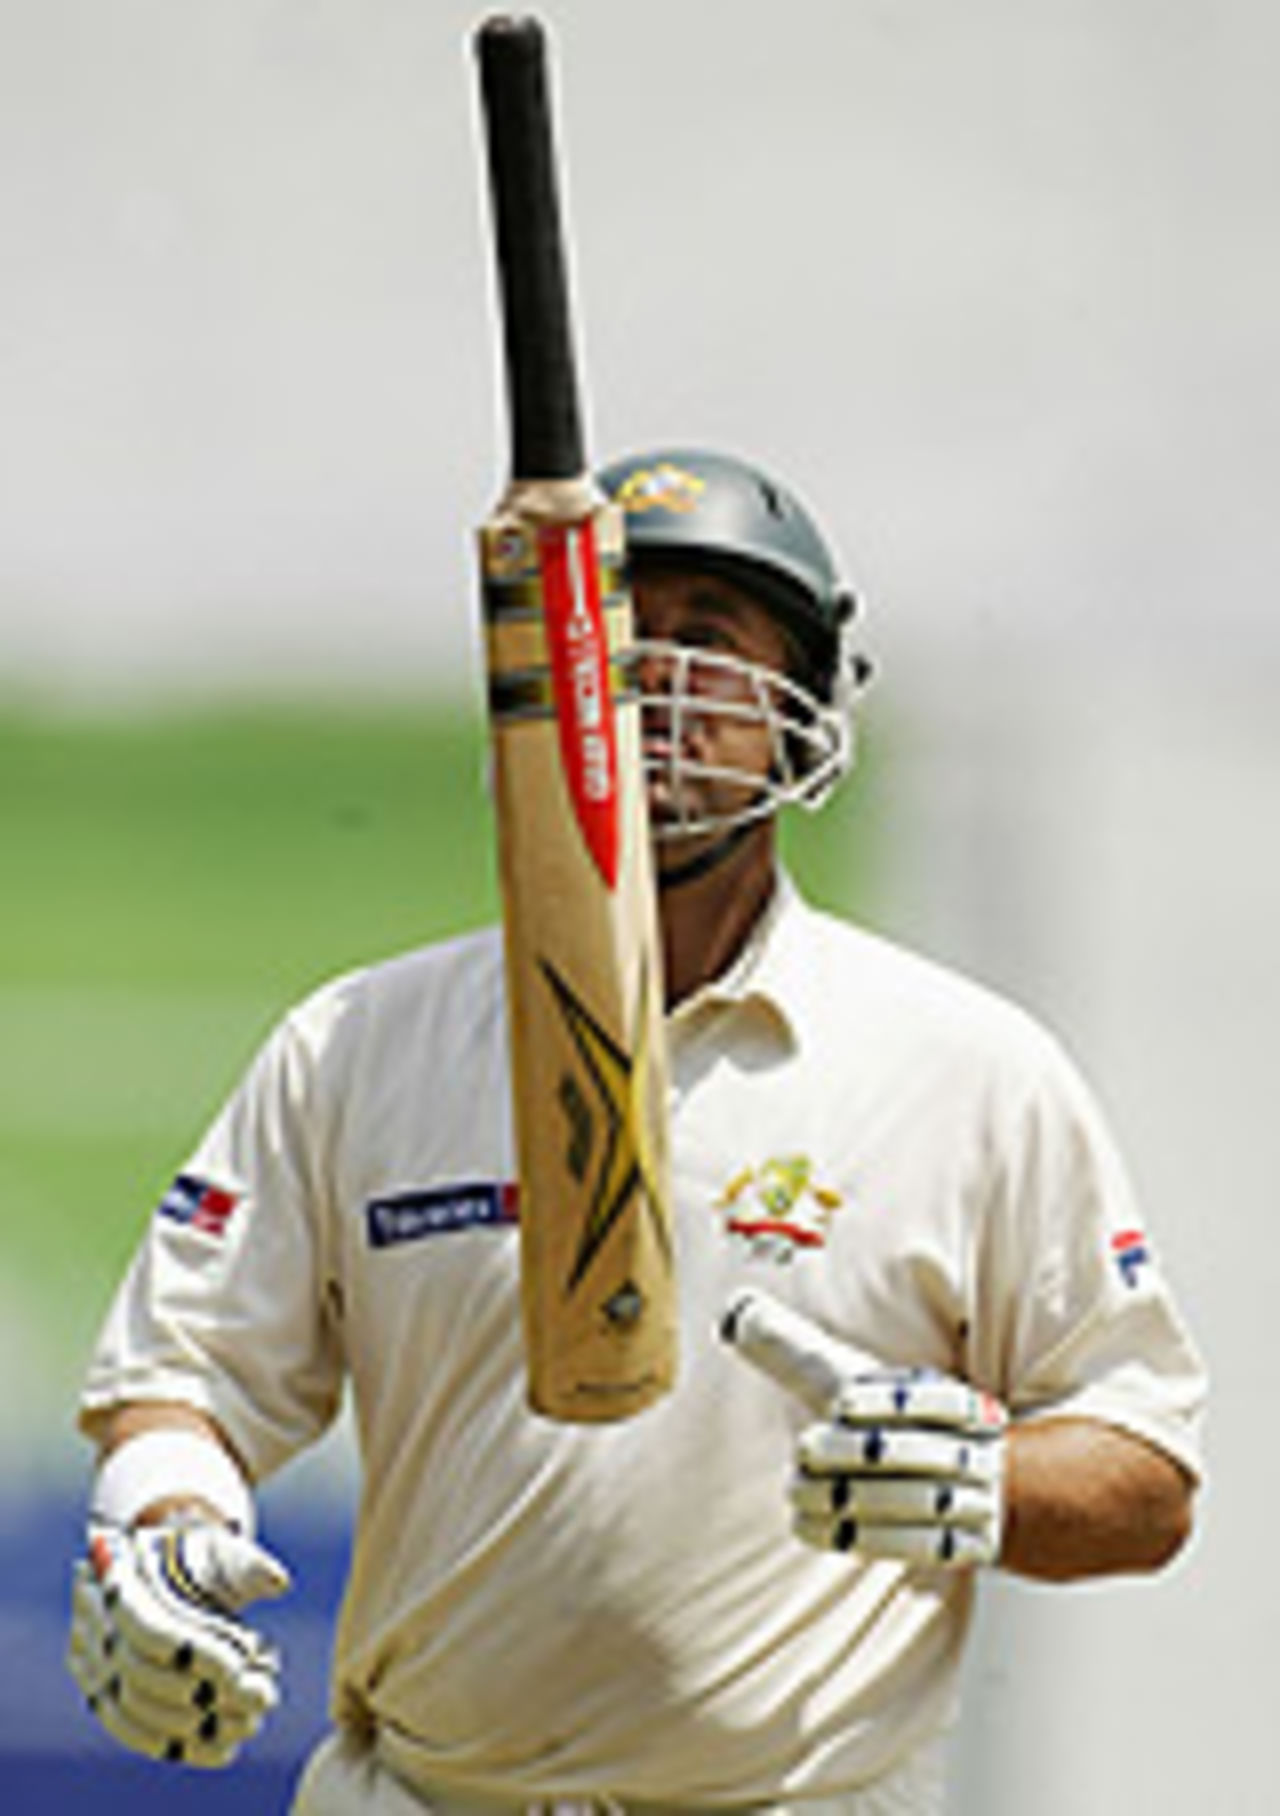 Darren Lehmann tosses his bat after being dismissed, Sri Lanka v Australia, 2nd Test, Kandy, 2nd day, March 18, 2004